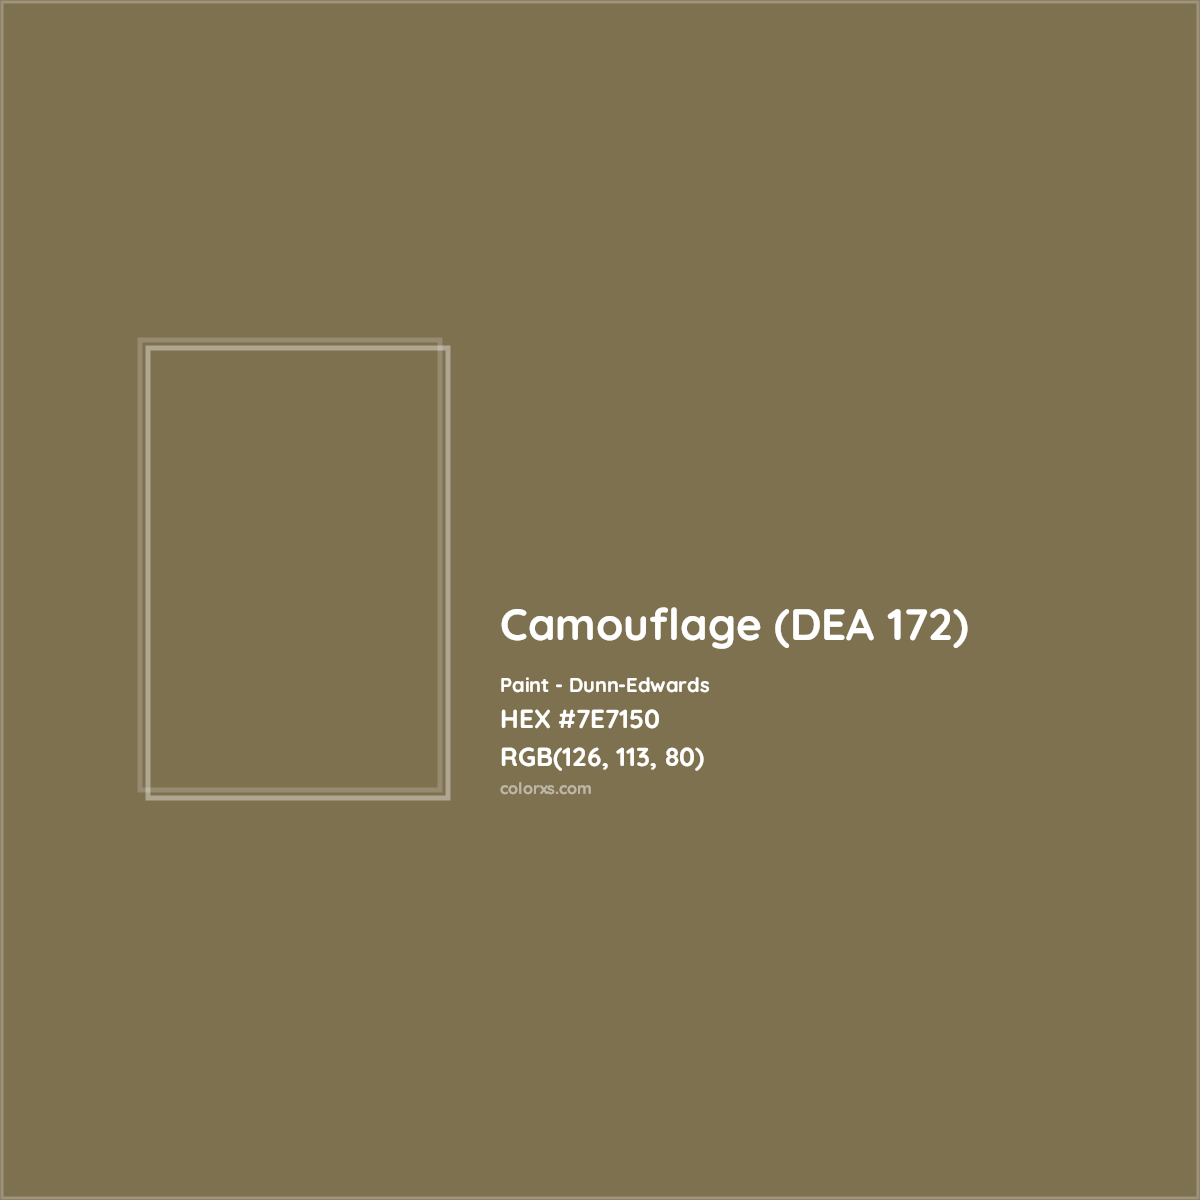 HEX #7E7150 Camouflage (DEA 172) Paint Dunn-Edwards - Color Code